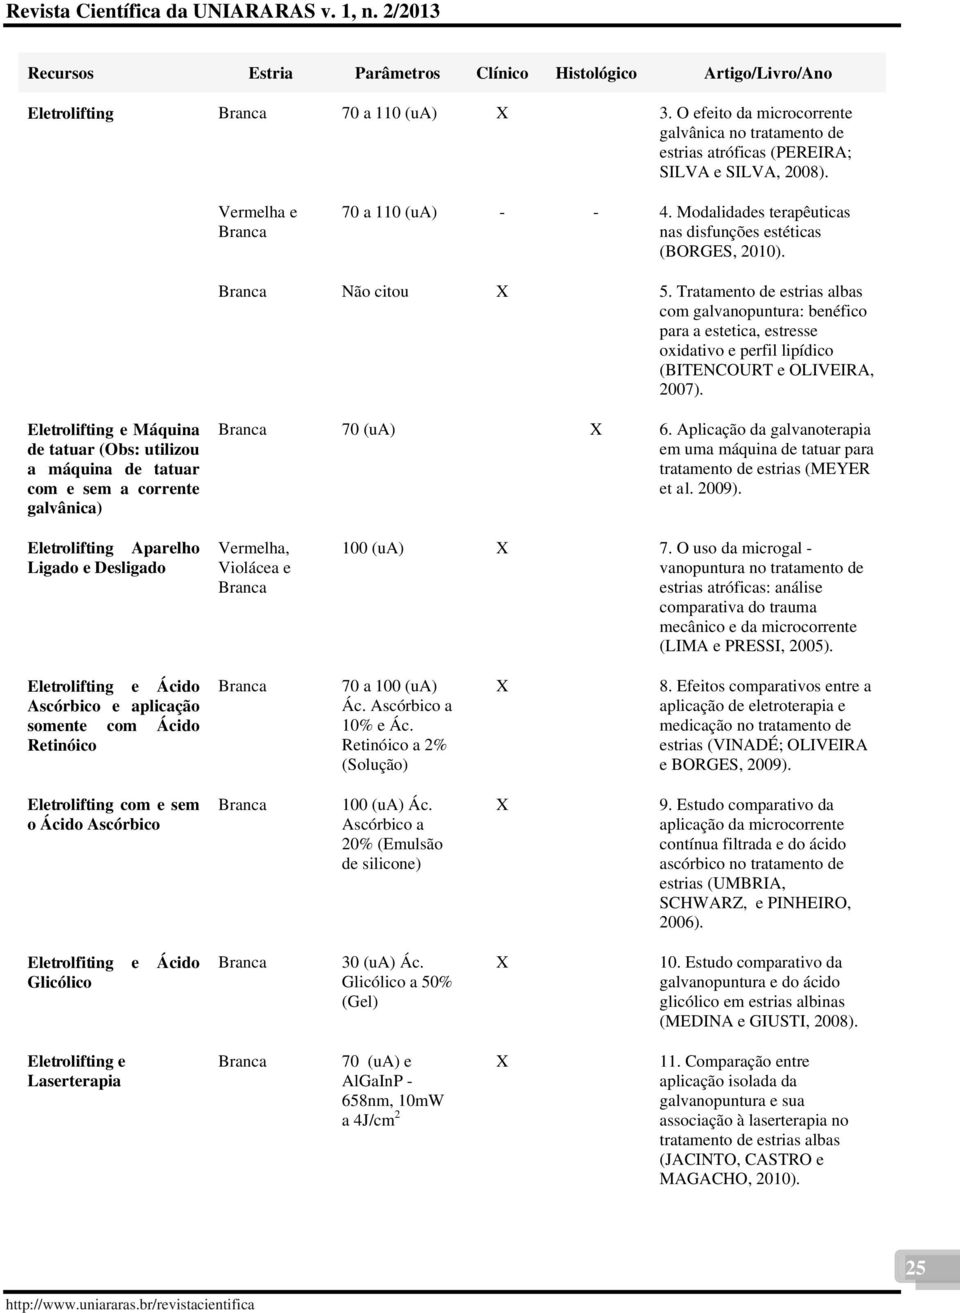 Tratamento de estrias albas com galvanopuntura: benéfico para a estetica, estresse oxidativo e perfil lipídico (BITENCOURT e OLIVEIRA, 2007).